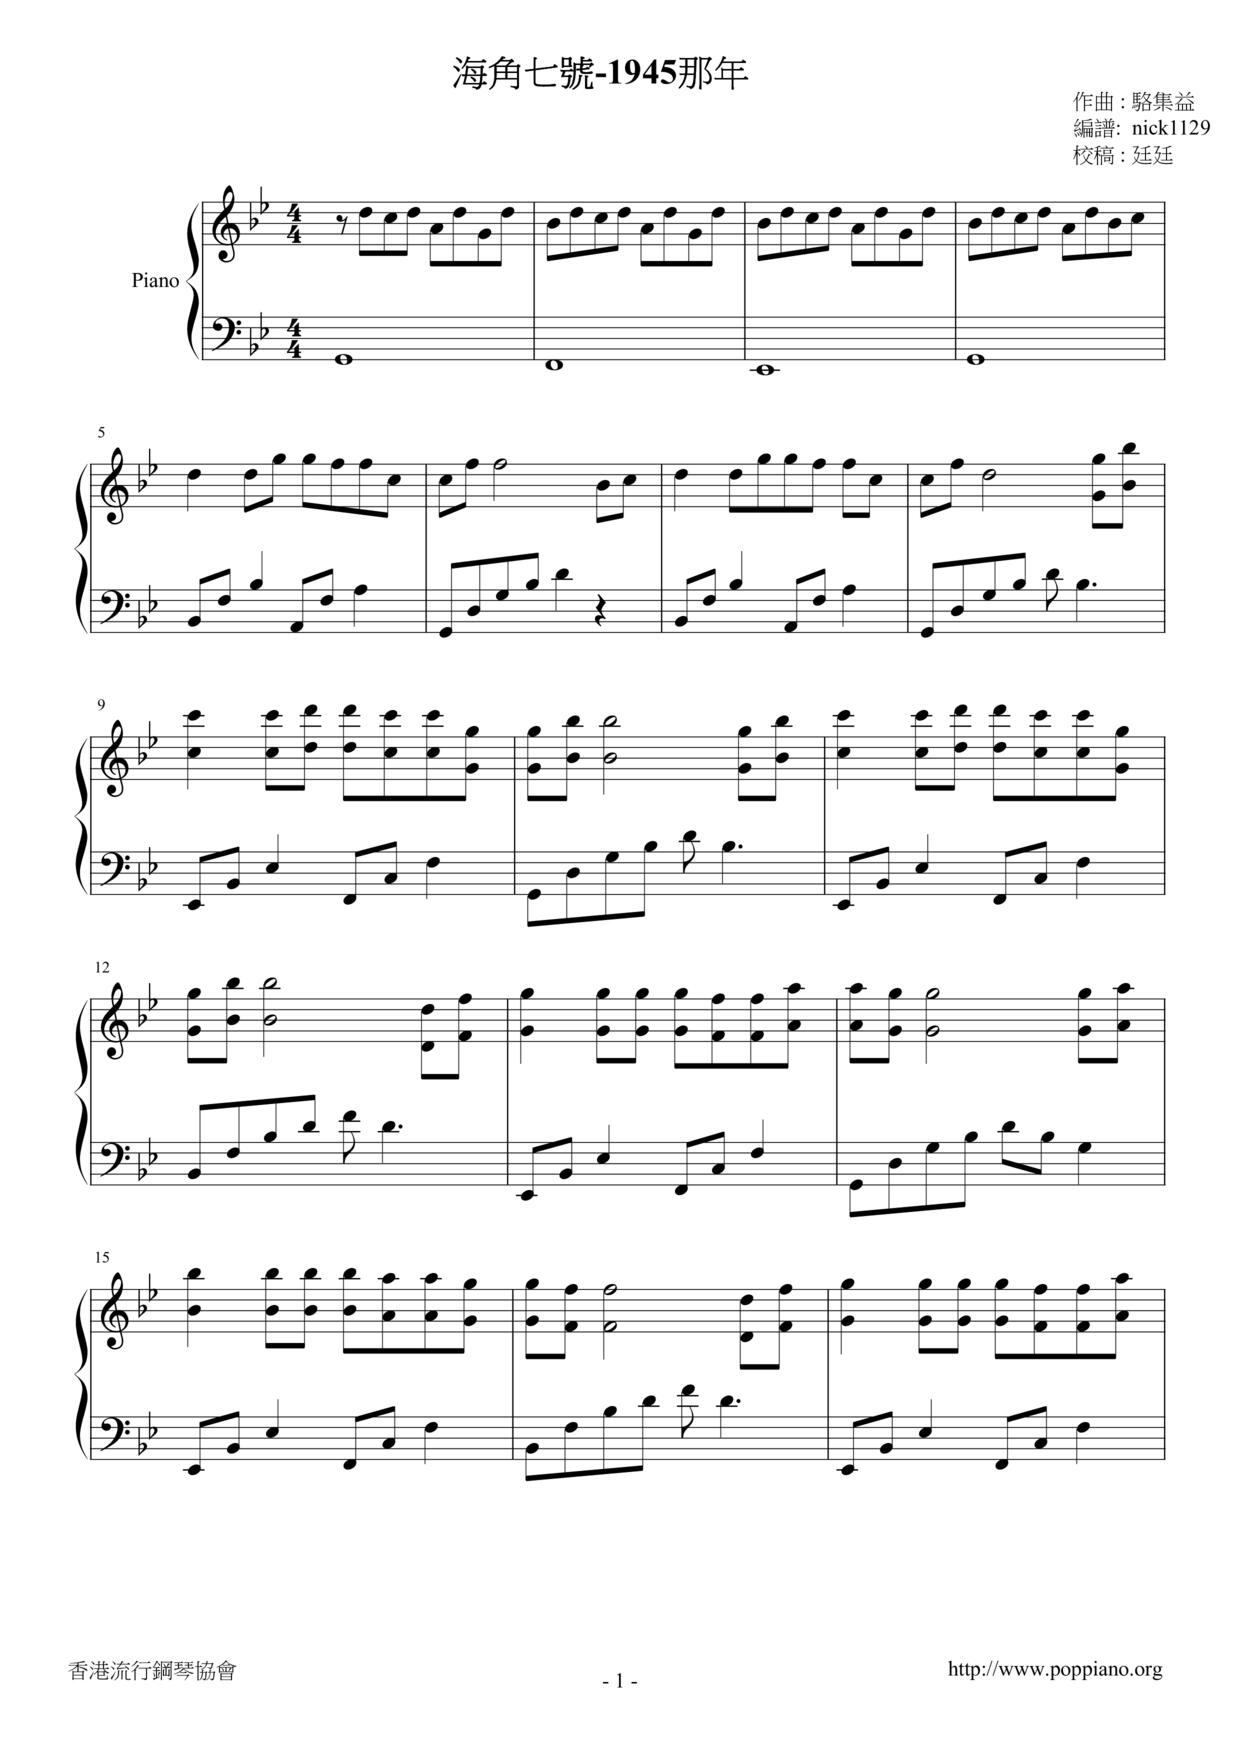 海角七號 - 1945那年ピアノ譜